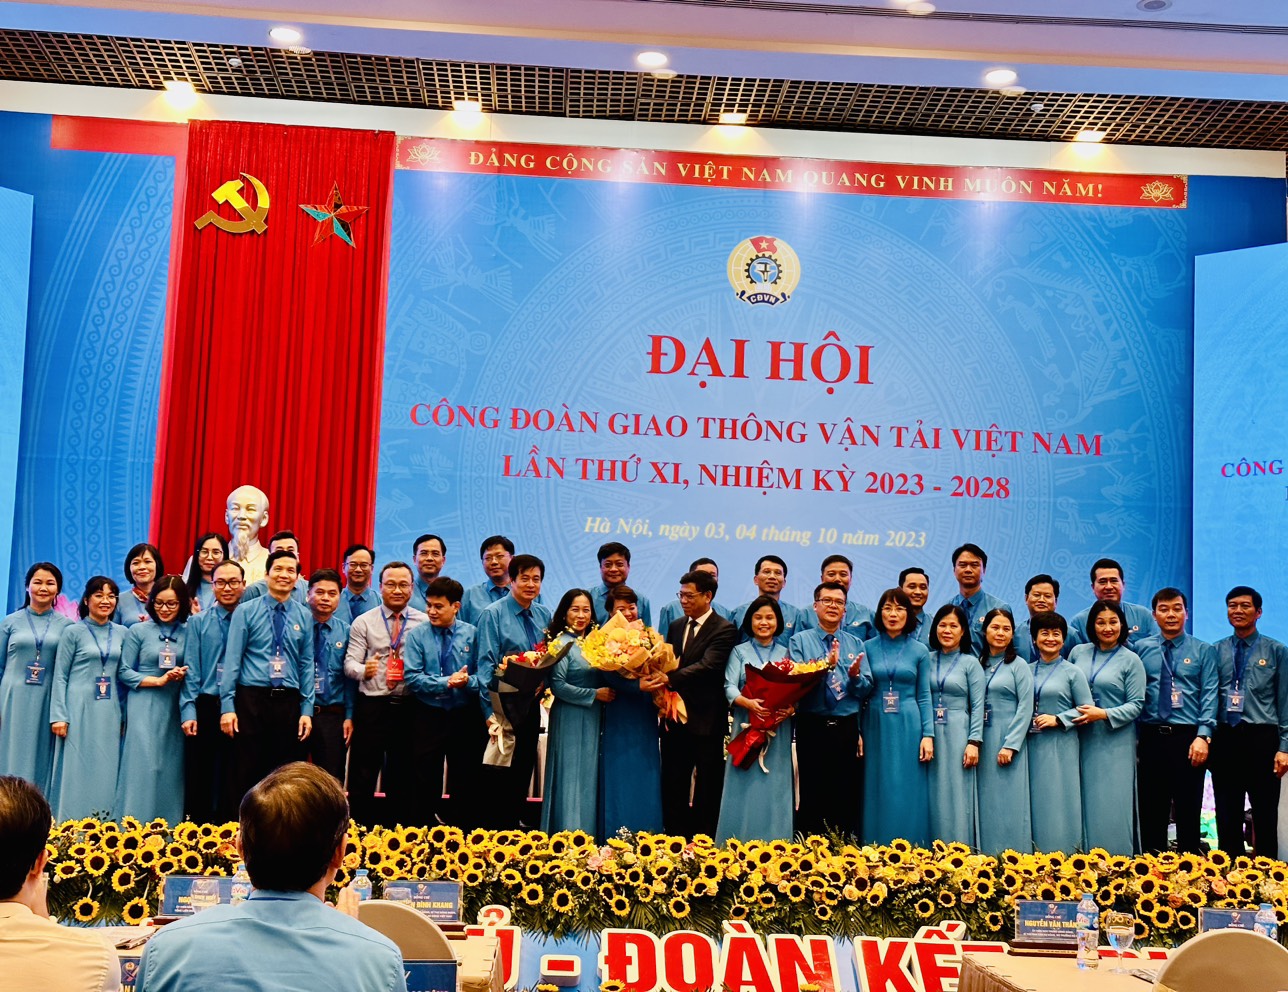 Đại hội Công đoàn Giao thông vận tải Việt Nam khóa XI, nhiệm kỳ 2023-2028